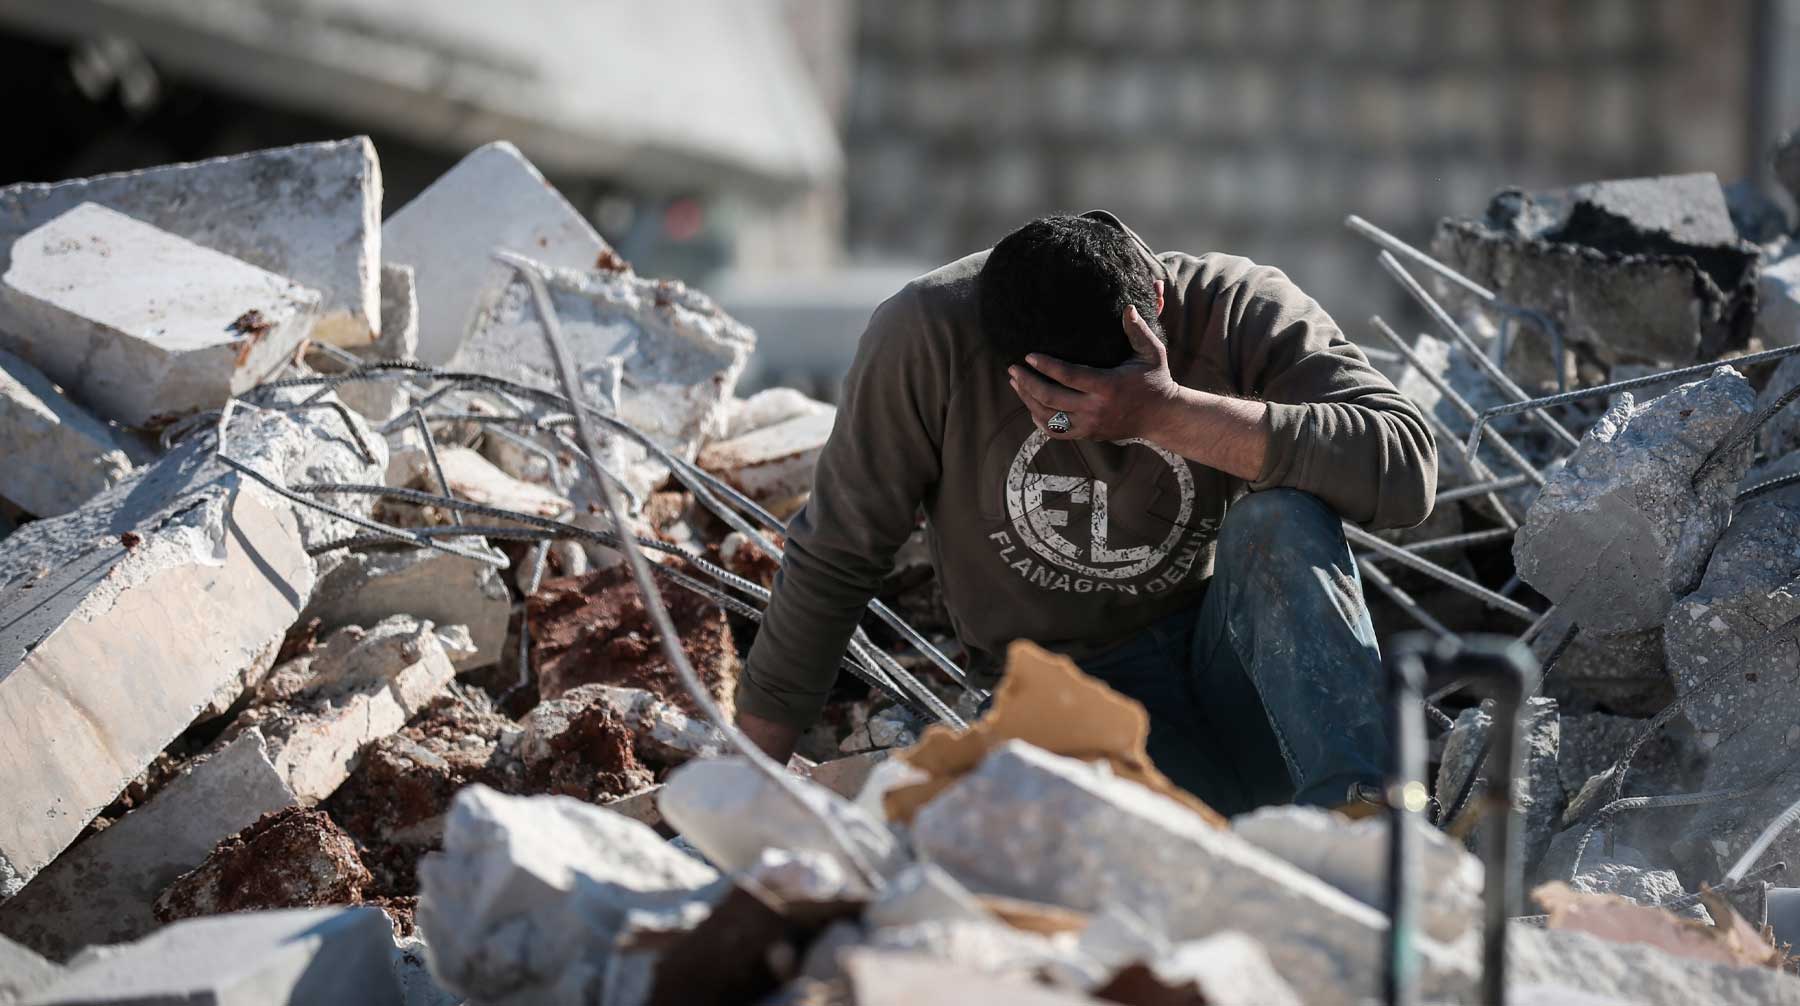 Анкара также сообщила о нанесении по позициям сирийских военнослужащих ответного удара Фото: © Global Looj Press / Anas Alkharboutli